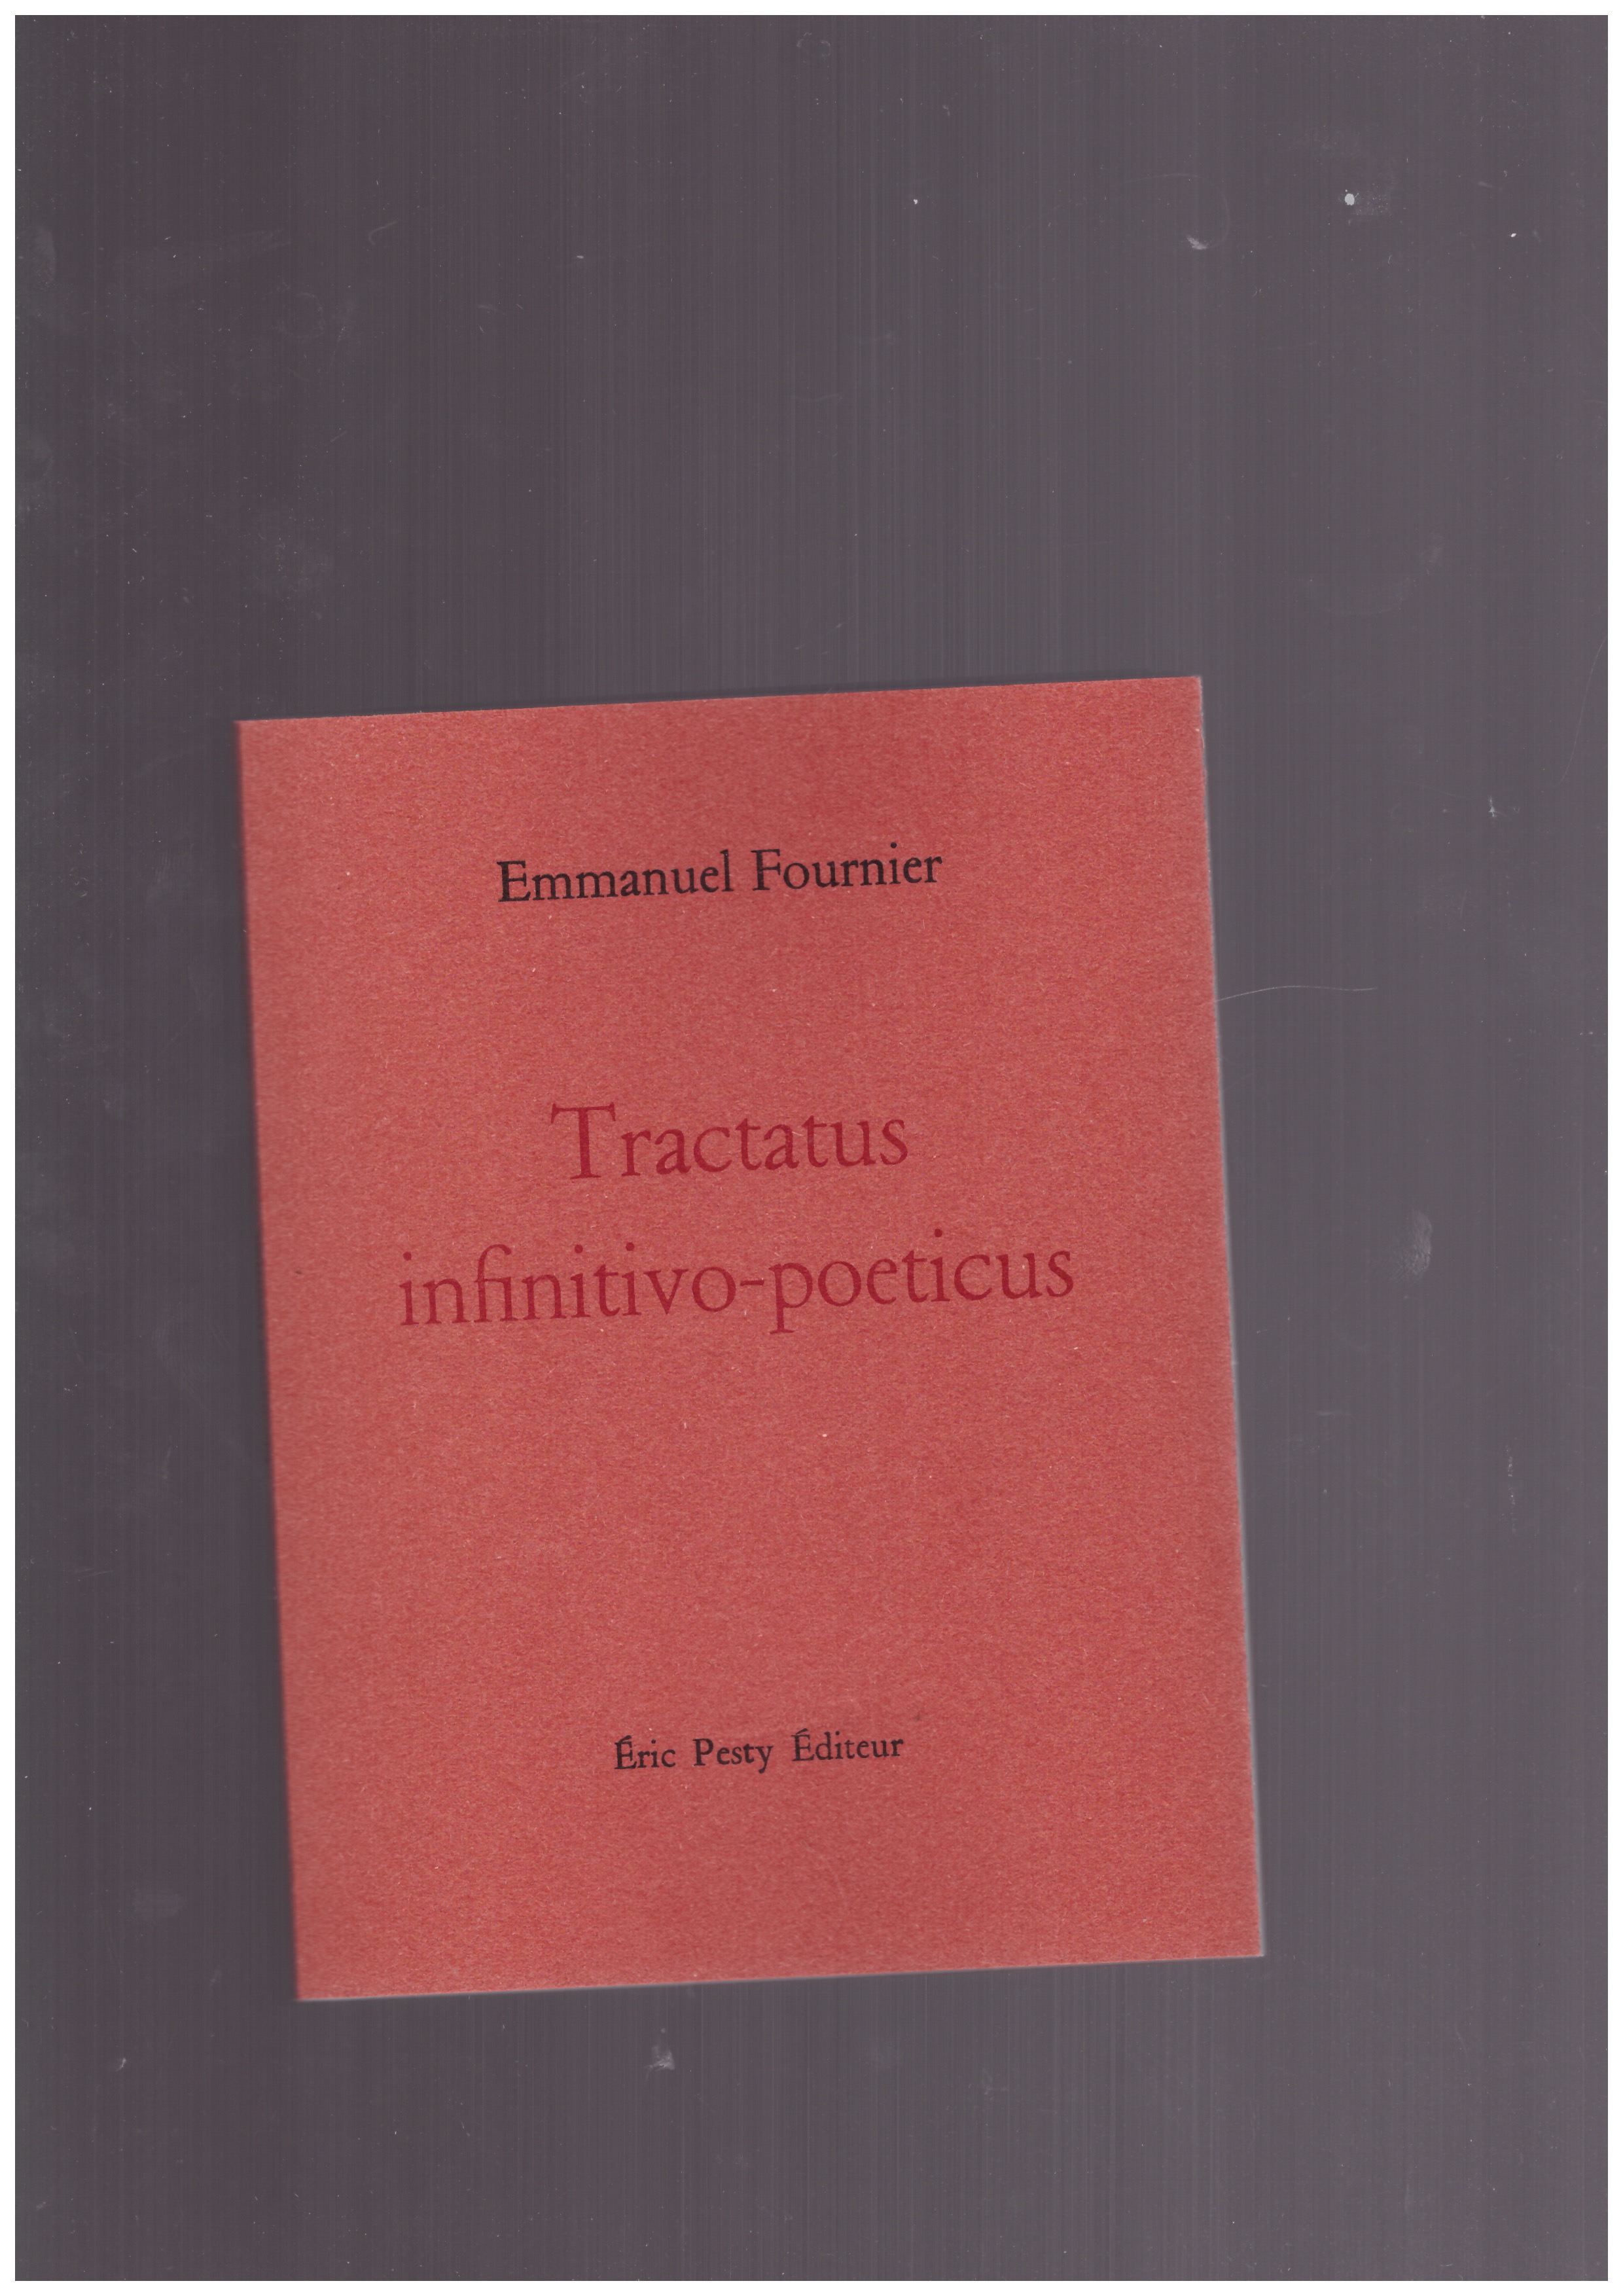 FOURNIER, Emmanuel - Tractatus infinitivo-poeticus